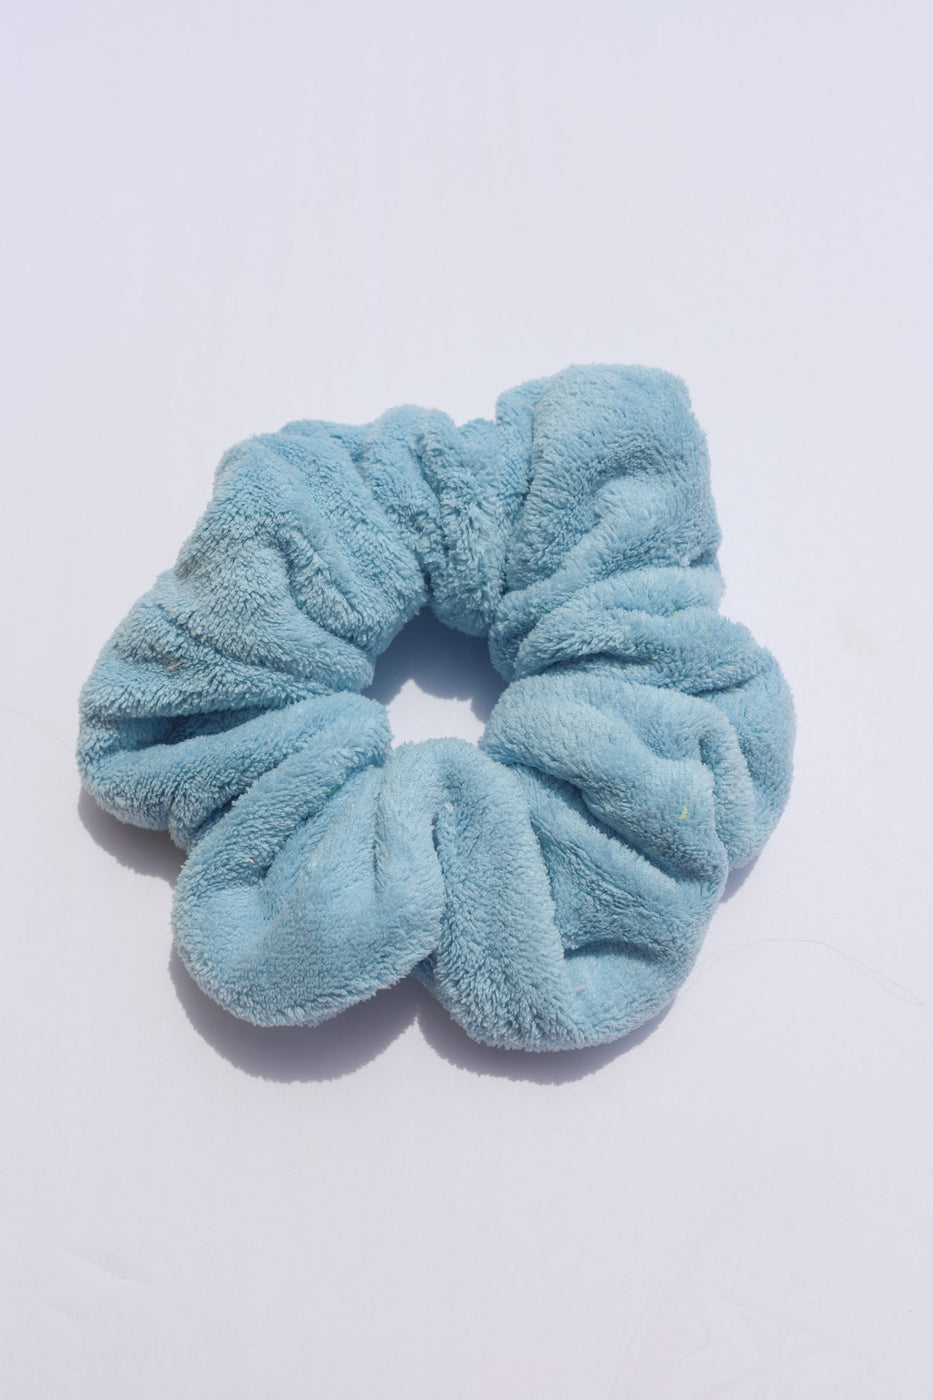 a blue hair scrunchie on a white surface